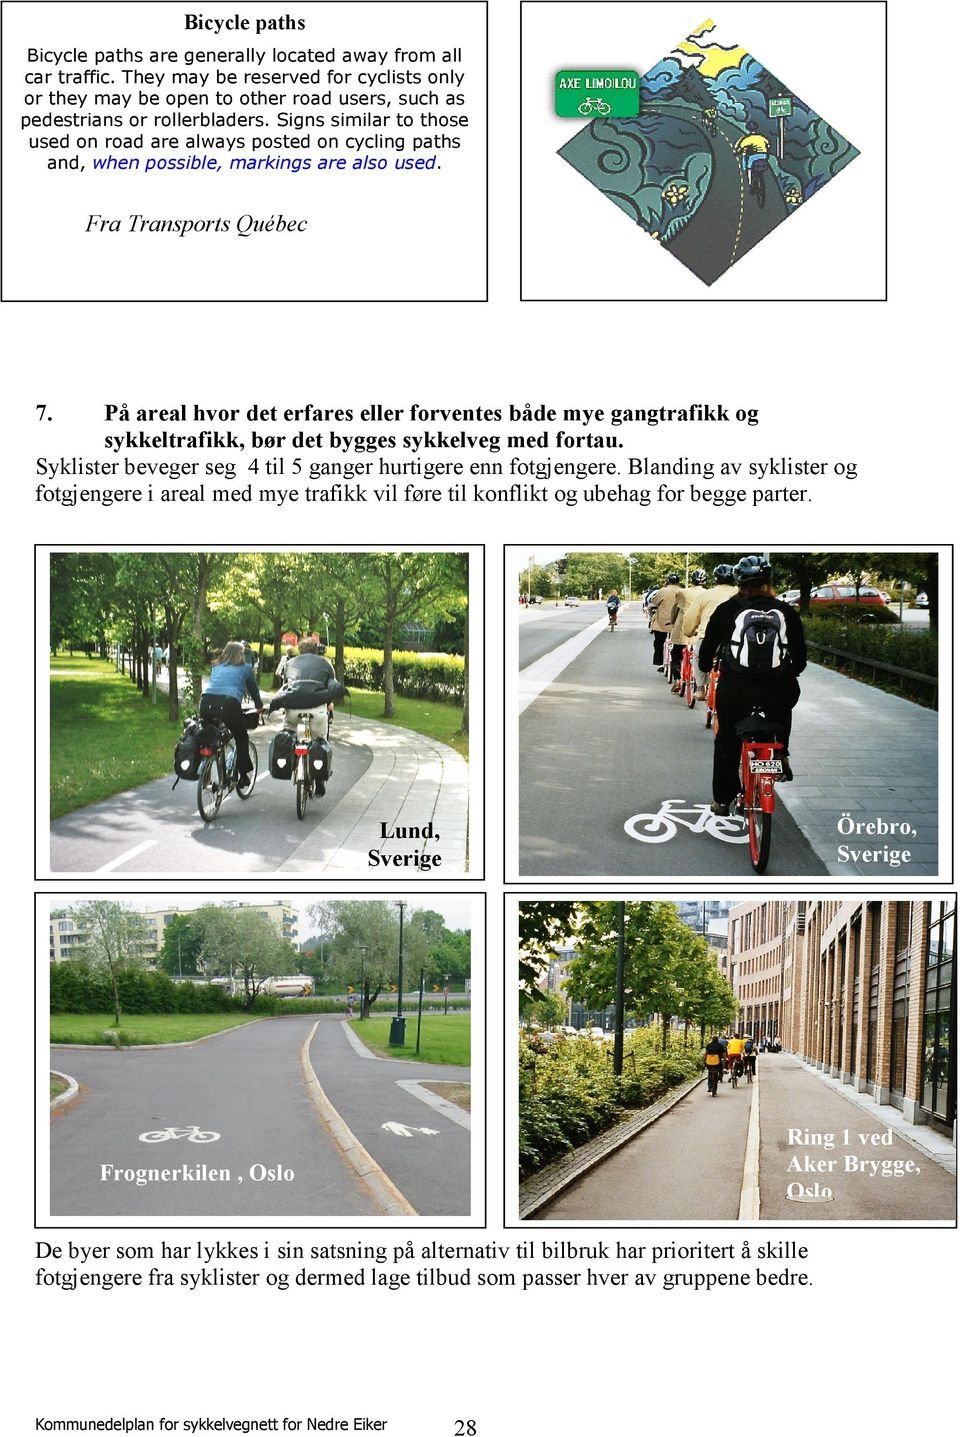 På areal hvor det erfares eller forventes både mye gangtrafikk og sykkeltrafikk, bør det bygges sykkelveg med fortau. Syklister beveger seg 4 til 5 ganger hurtigere enn fotgjengere.